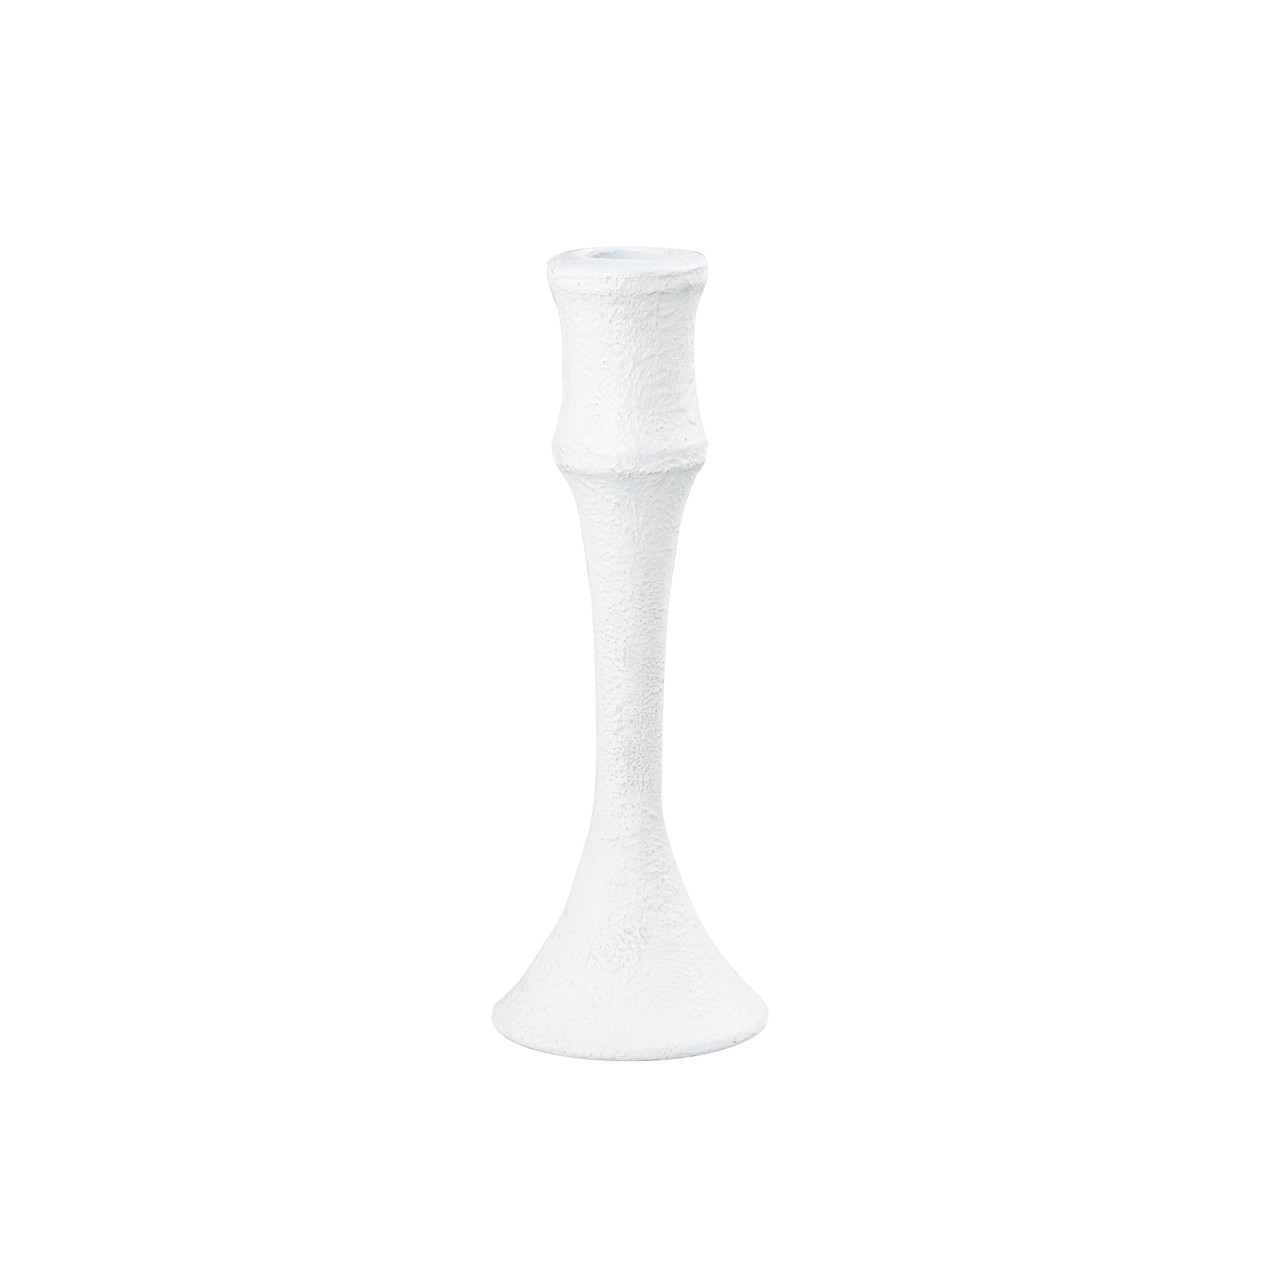 ELK HOME H0897-10923/S2 Miro Candleholder - Set of 2 Plaster White